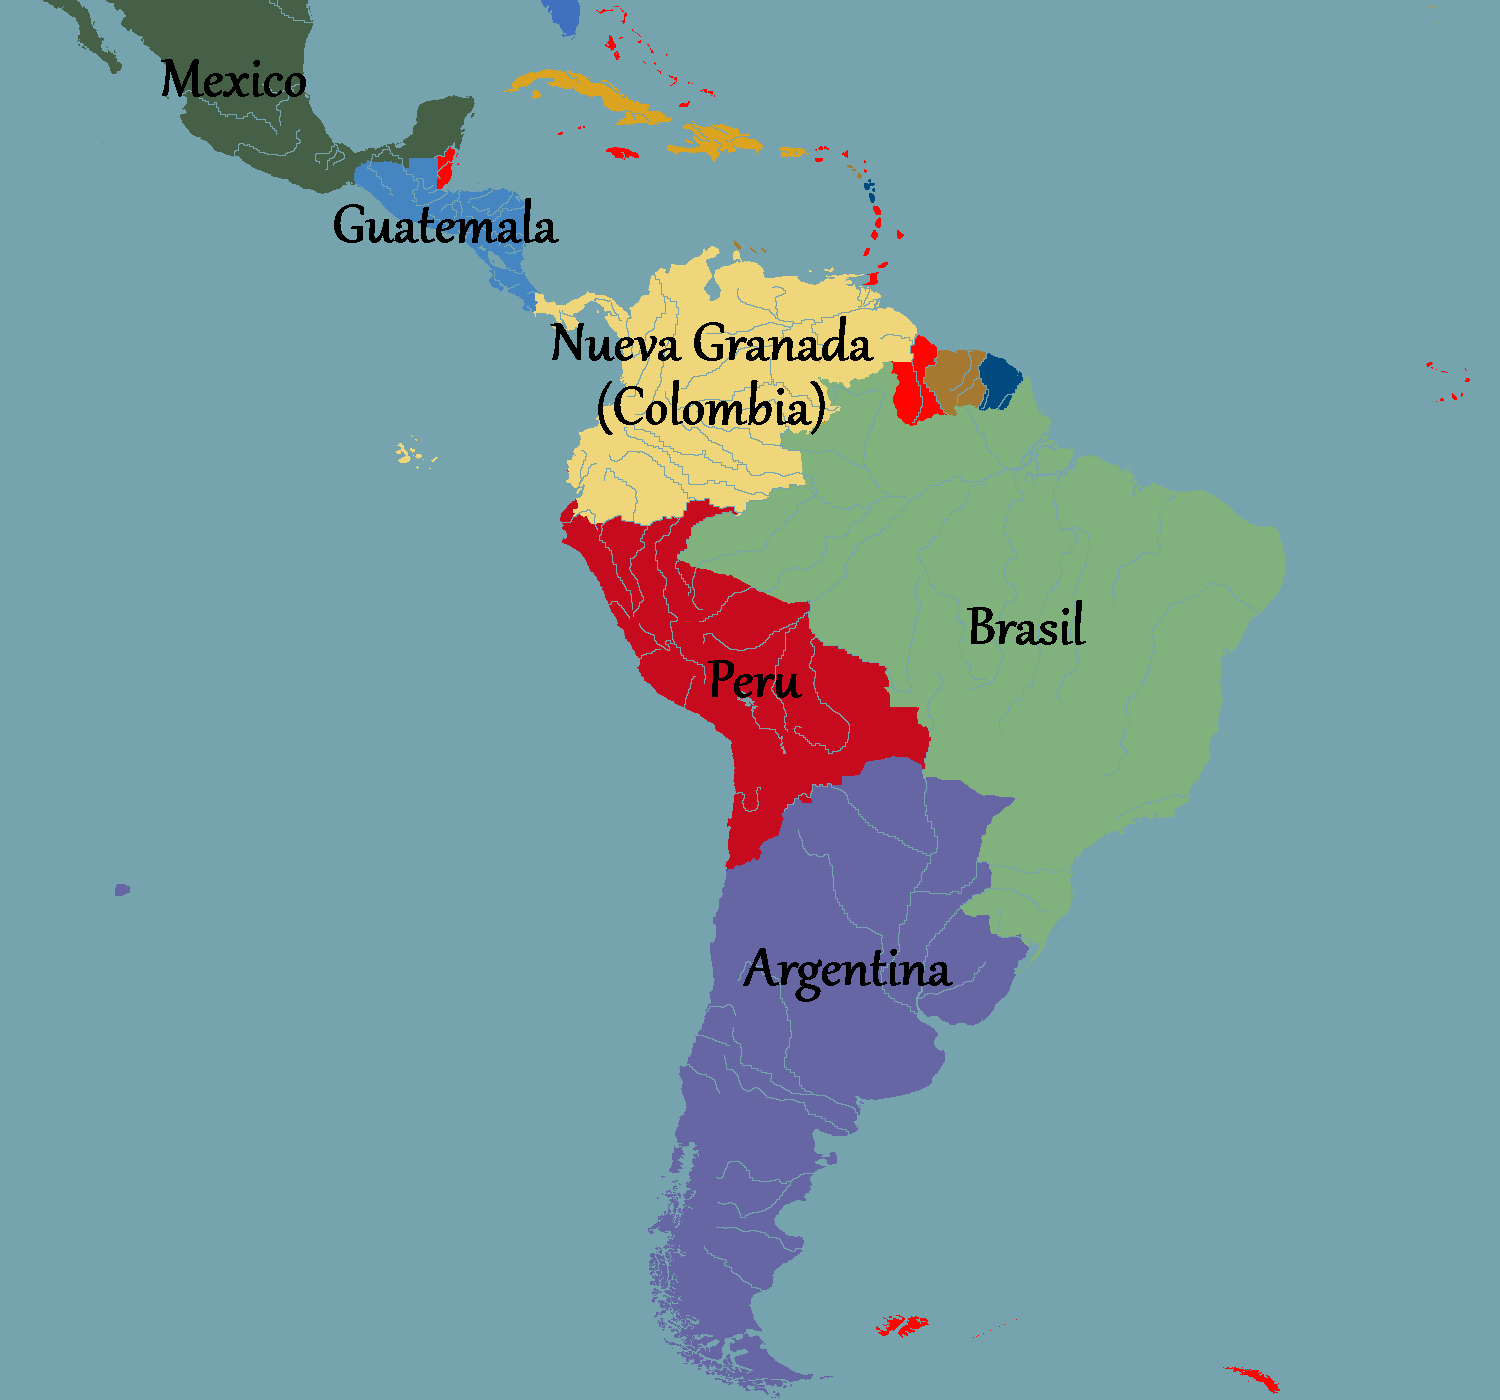 Испаноязычные страны америки. Колонии Испании в Латинской Америке. Карта испанских колоний в Южной Америке. Карта испанских колоний в Латинской Америке. Колонии Испании в 19 веке в Латинской Америке.